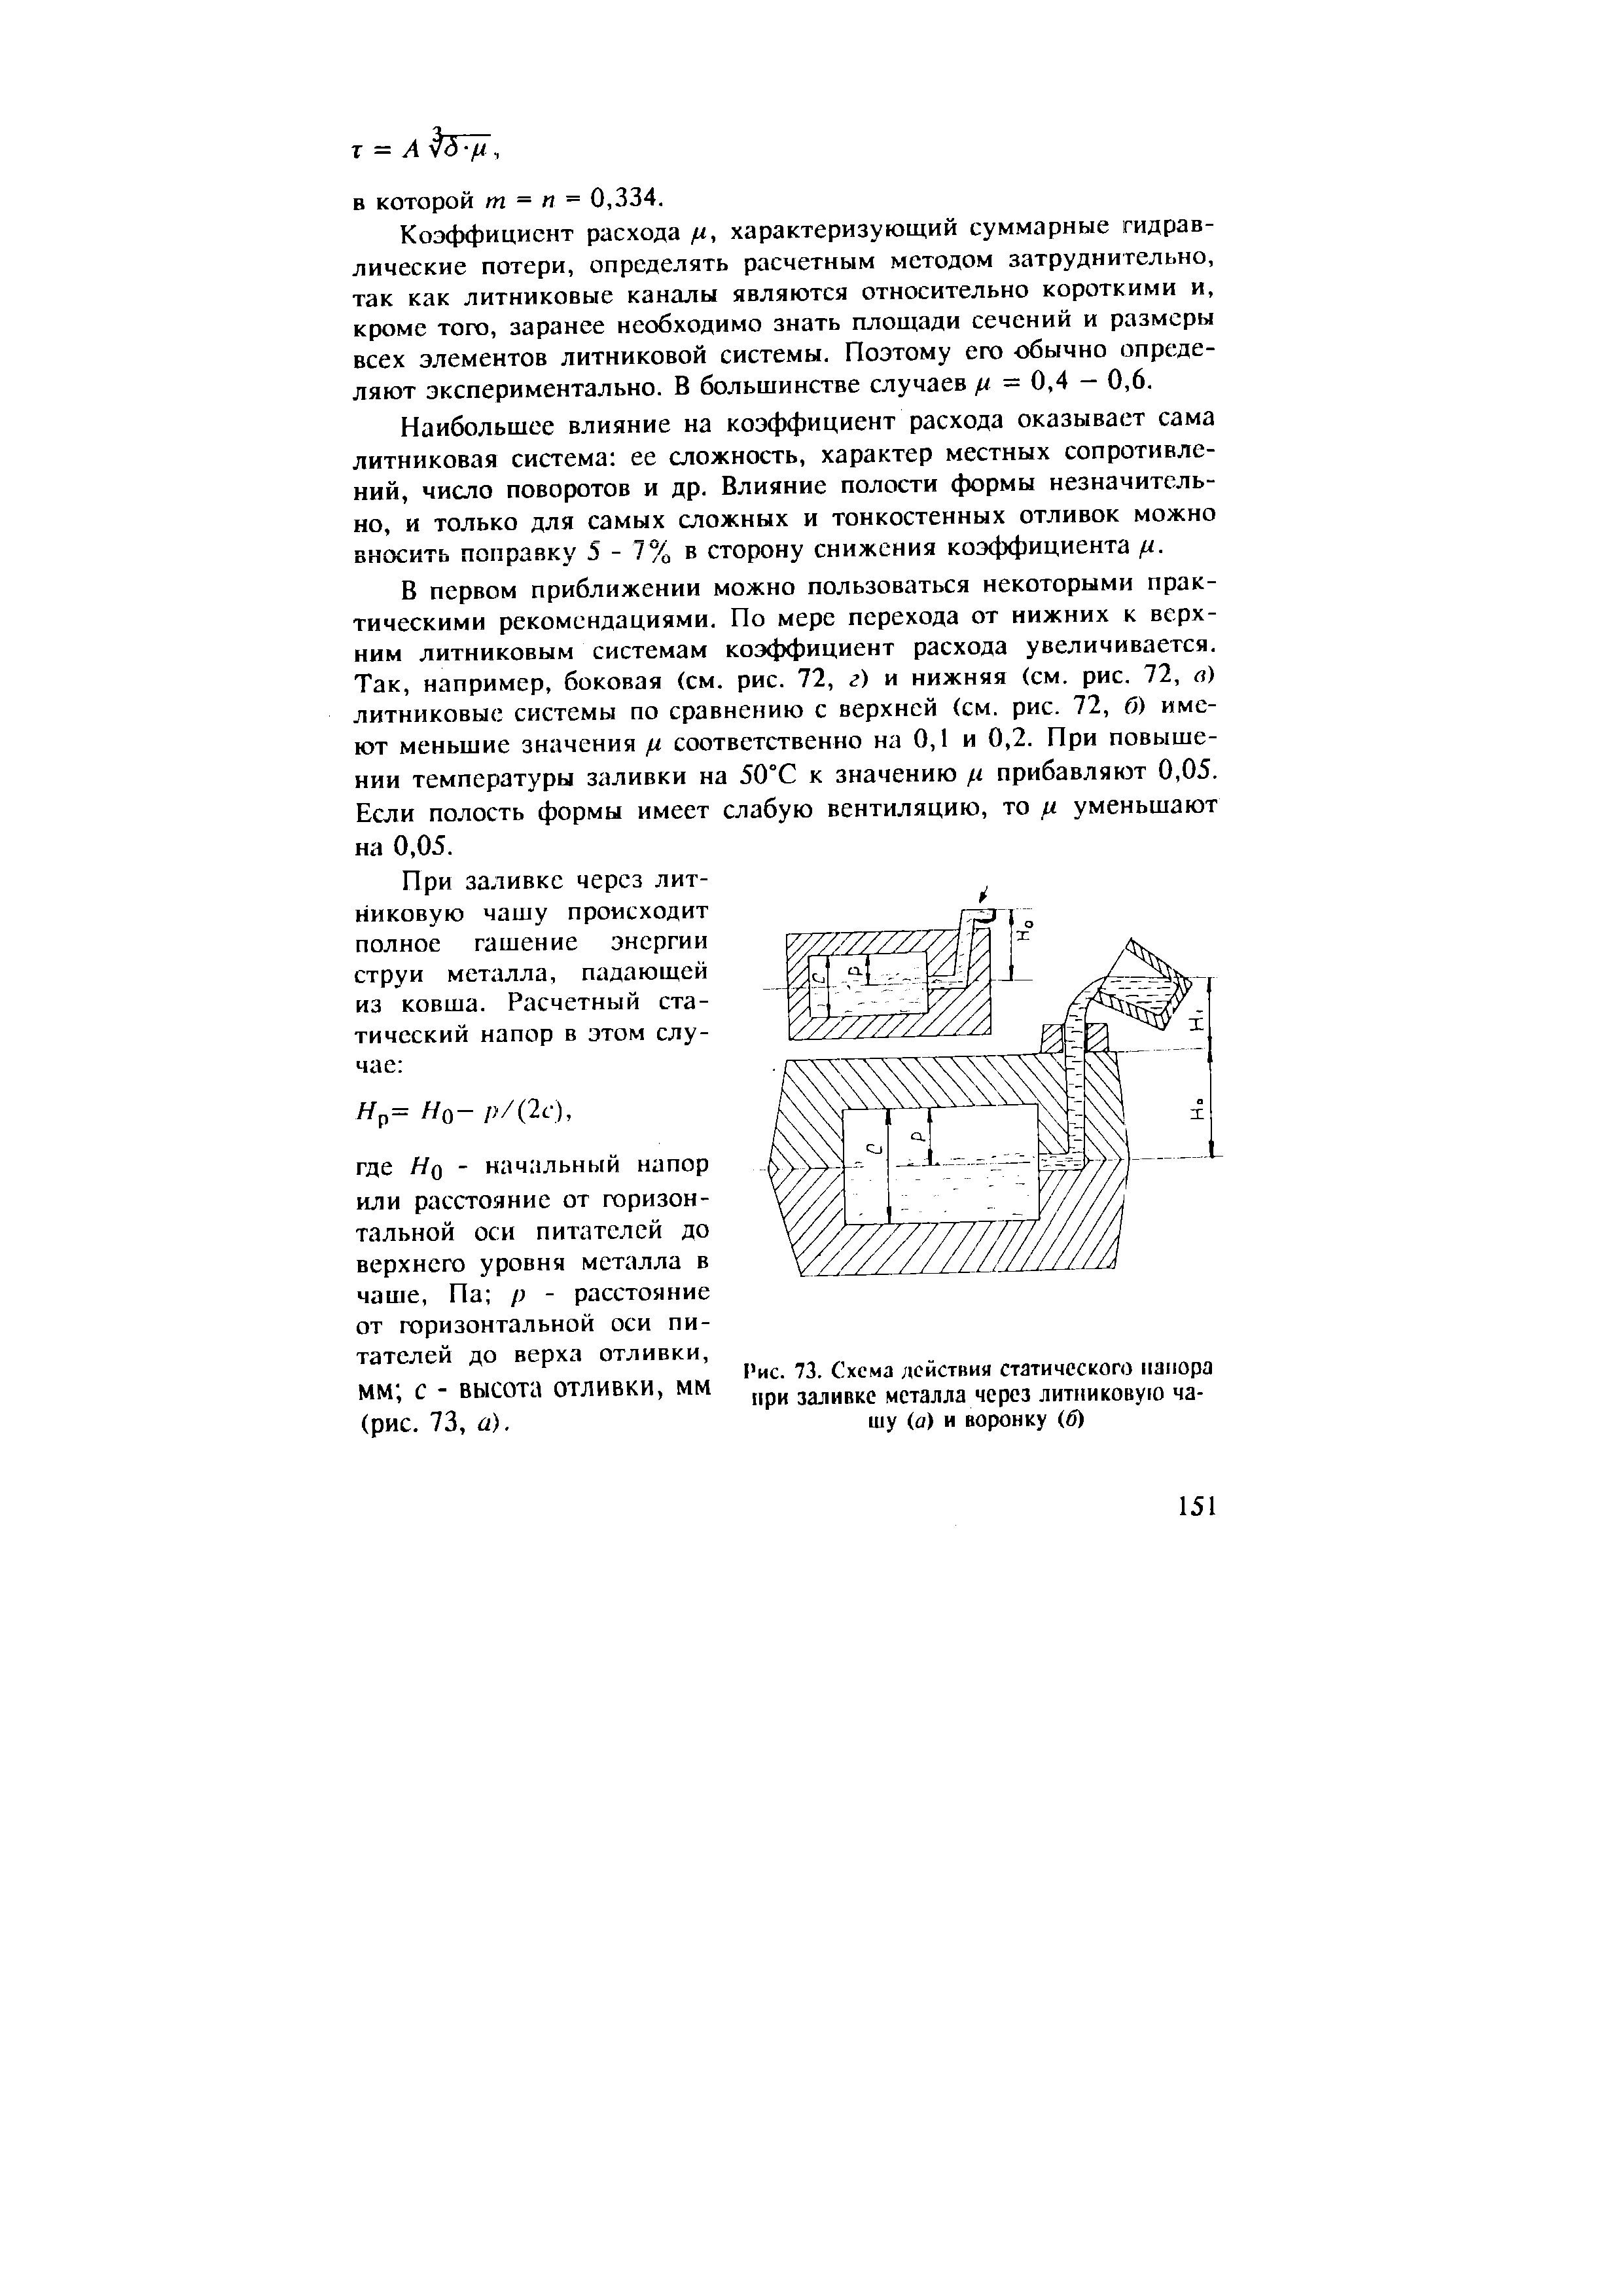 Рис. 73. Схема действия статического напора при заливке металла через литииковуго чашу (о) и воронку (б)
